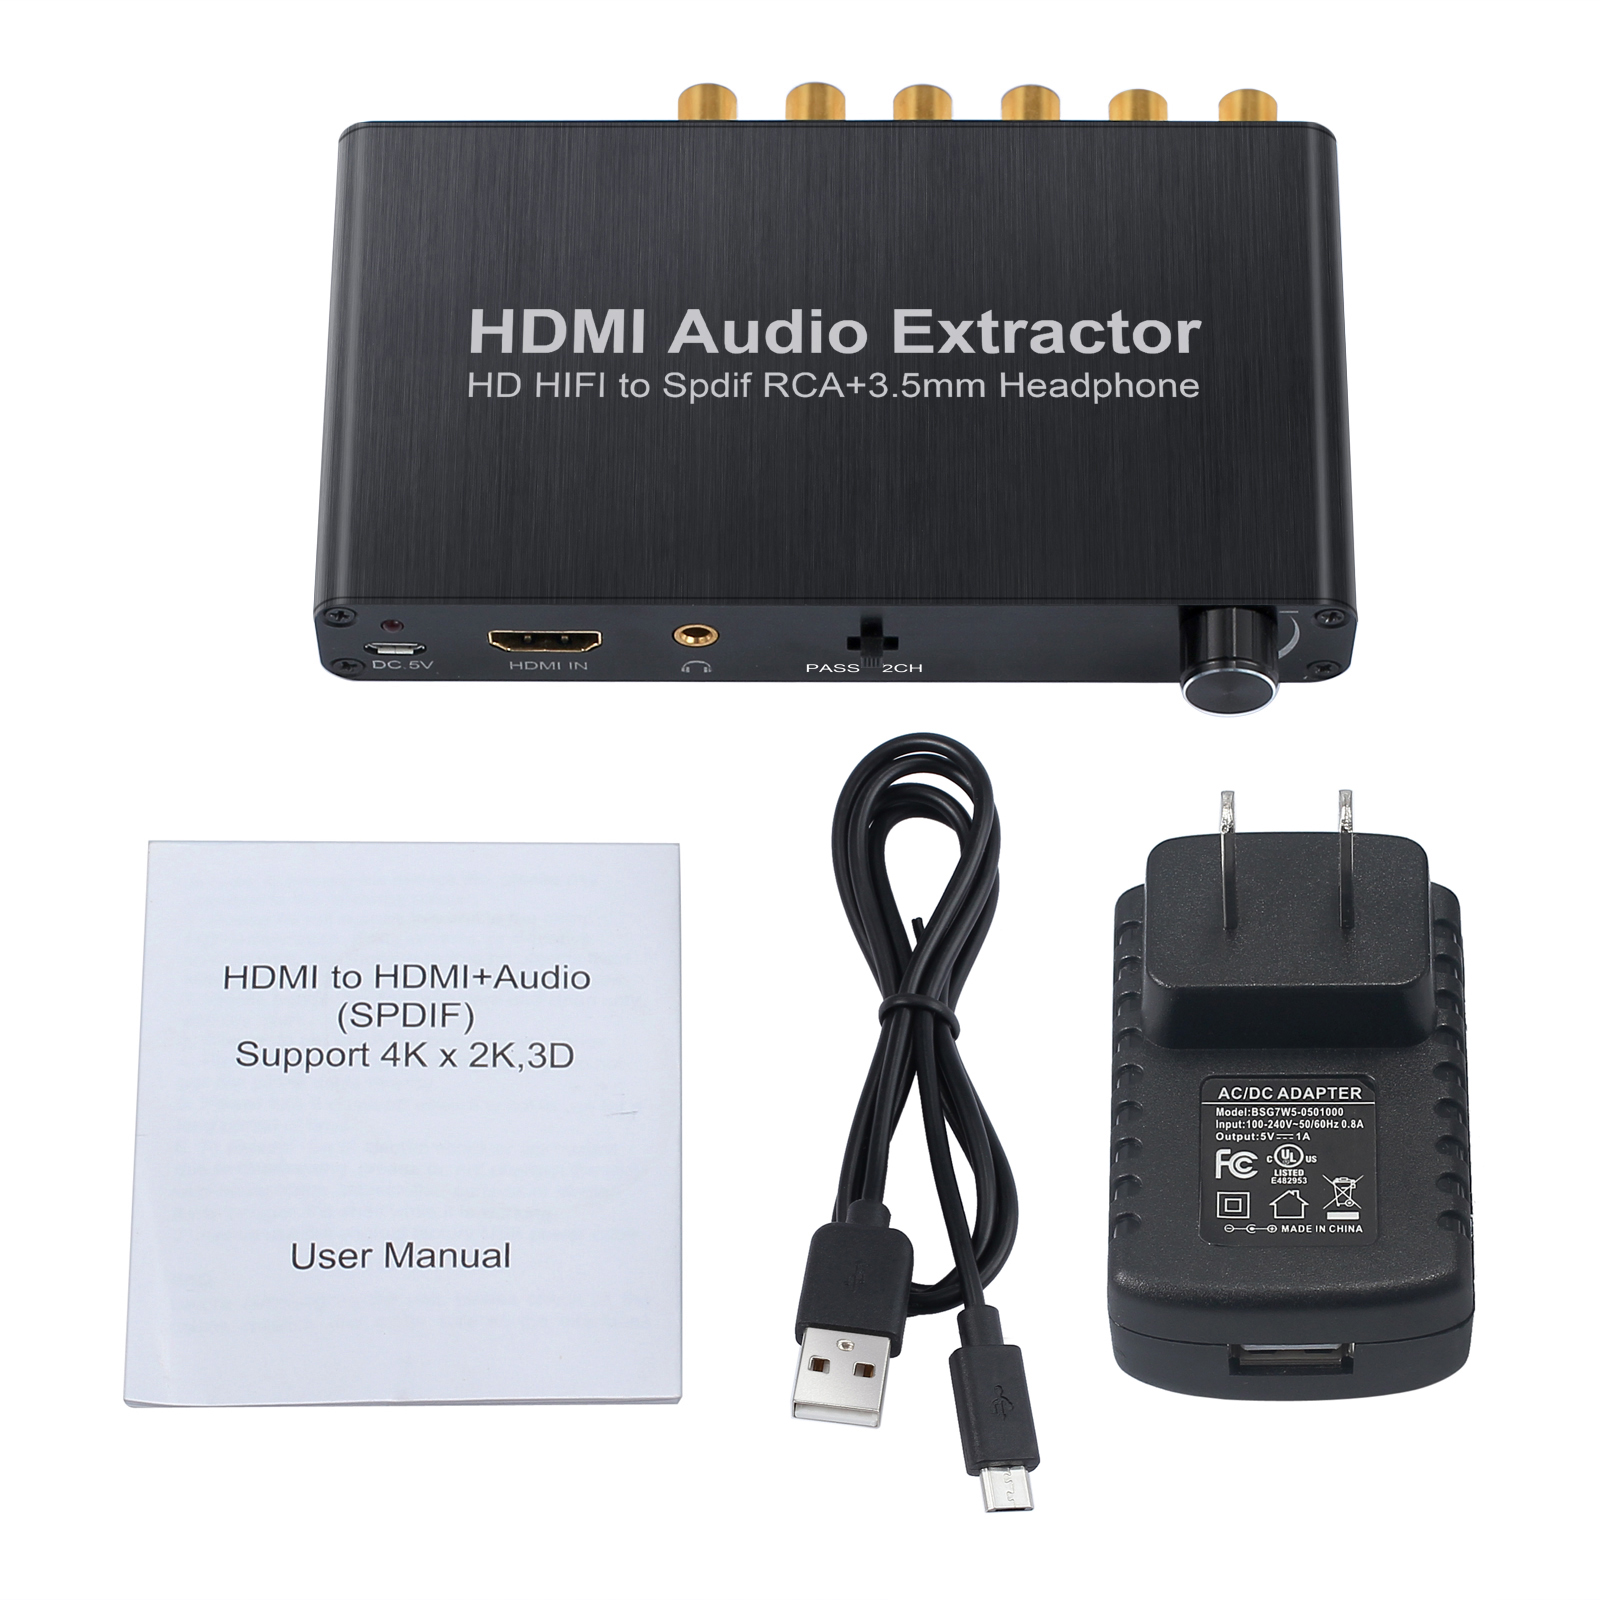 Digital Audio Decoder 5.1 HDMI 4k. Аудио Декодер 5.1 4k 60hz. HDMI Audio Extractor aux. HDMI аудио экстрактор 4k 60 Гц 7.1Ch HDMI. Аудио экстрактор